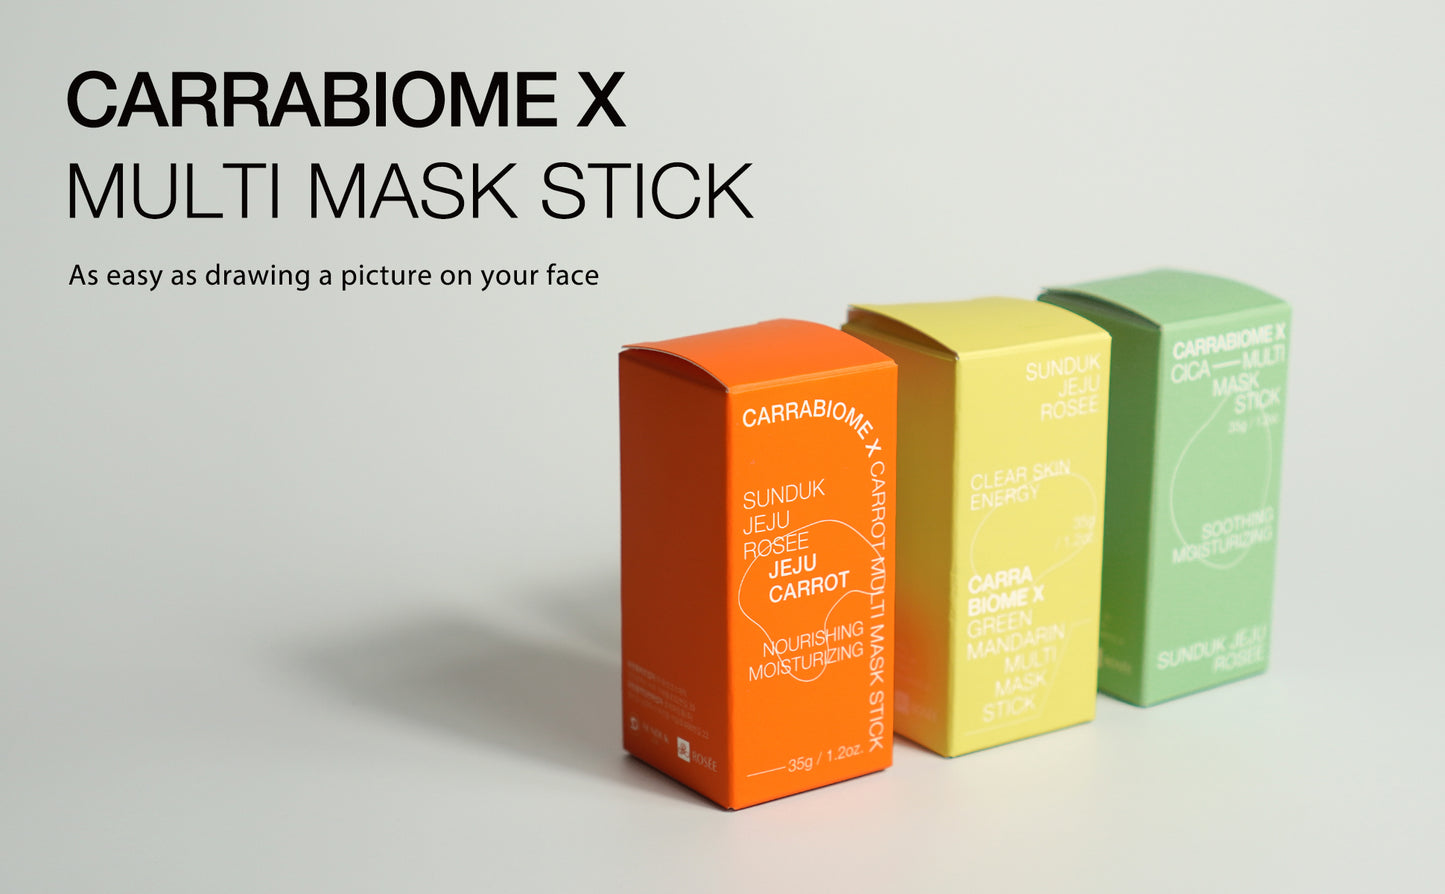 SUNDUK Jeju Carrabiome Multi Mask Stick Clay Pack Skin 35g